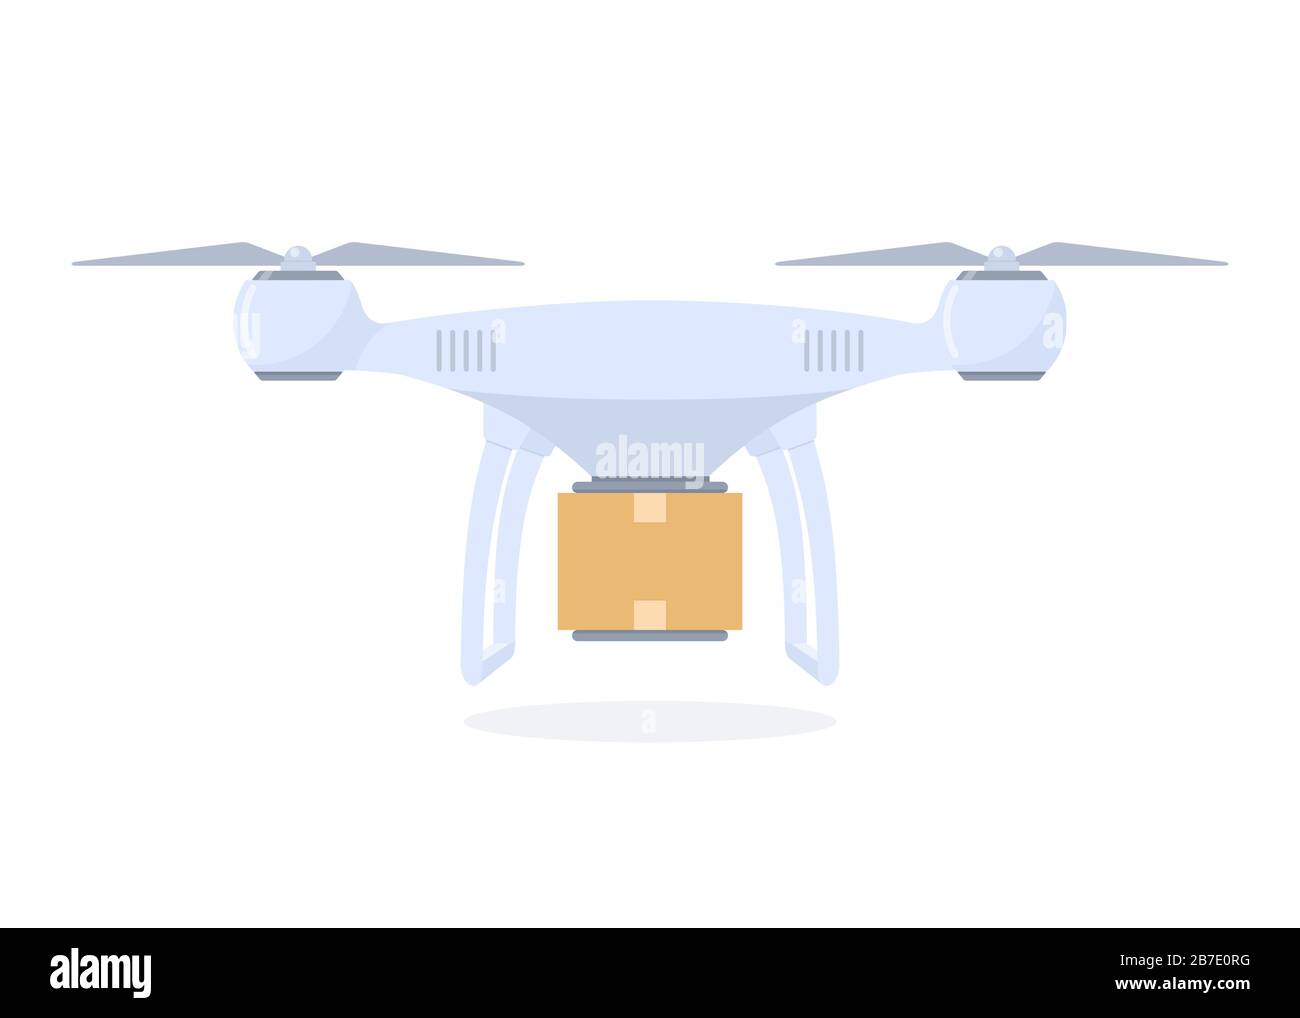 Illustrazione del concetto di consegna dei droni. Quadricottero di consegna con pacchetto. Illustrazione vettoriale in stile piatto Illustrazione Vettoriale